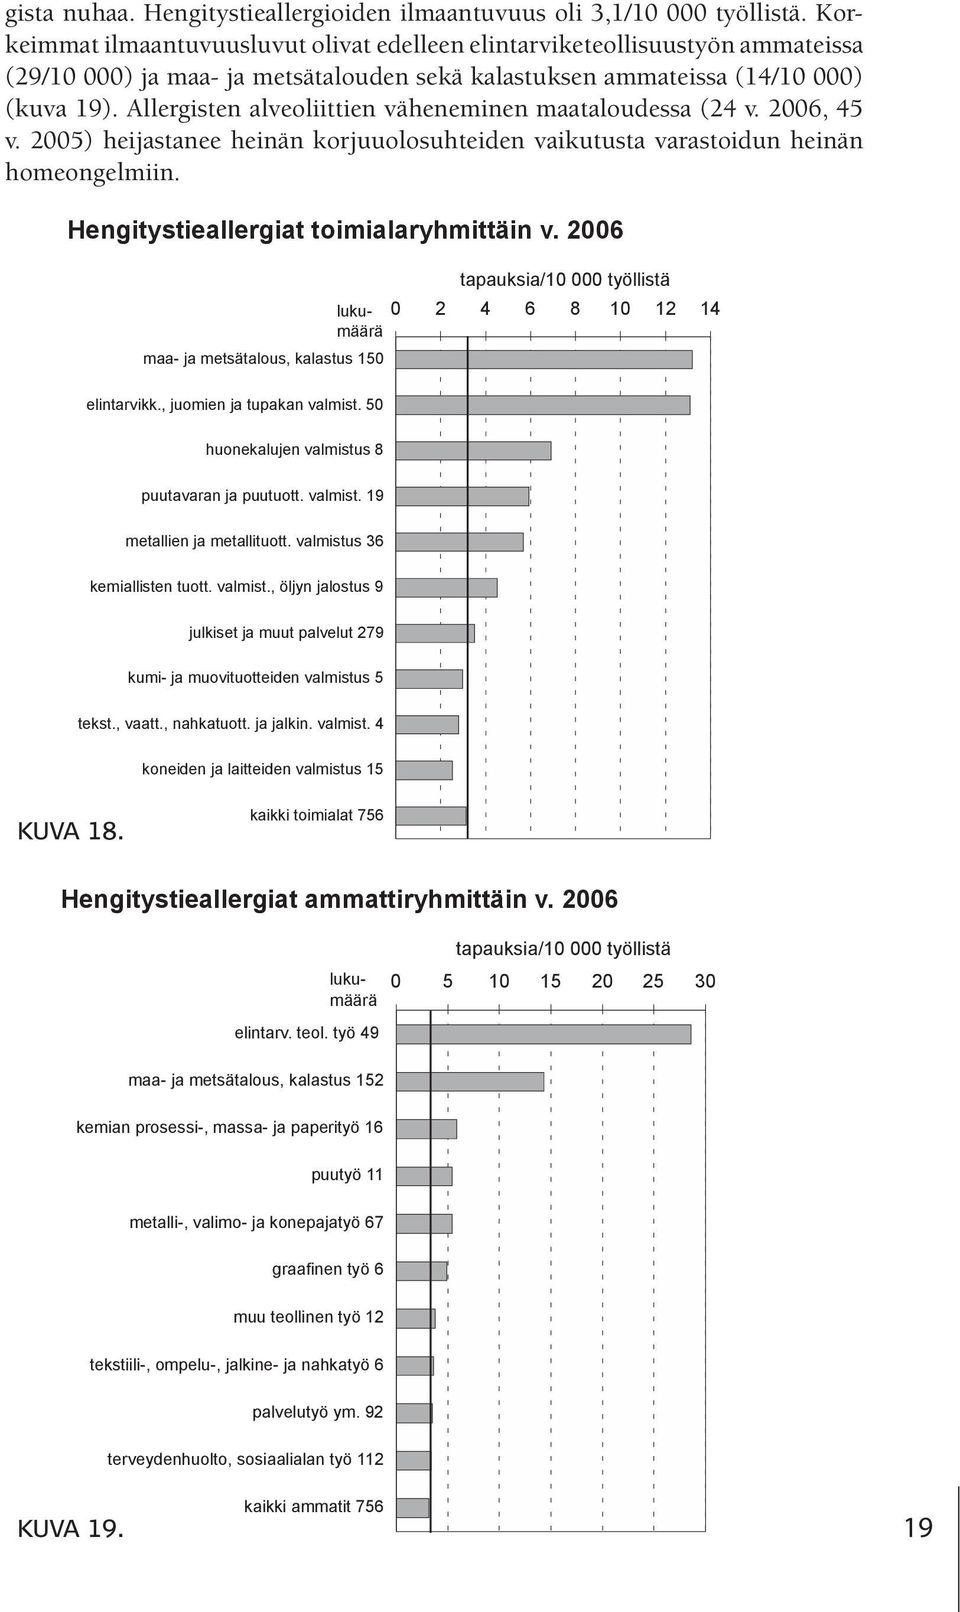 Allergisten alveoliittien väheneminen maataloudessa (24 v. 2006, 45 v. 2005) heijastanee heinän korjuuolosuhteiden vaikutusta varastoidun heinän homeongelmiin.